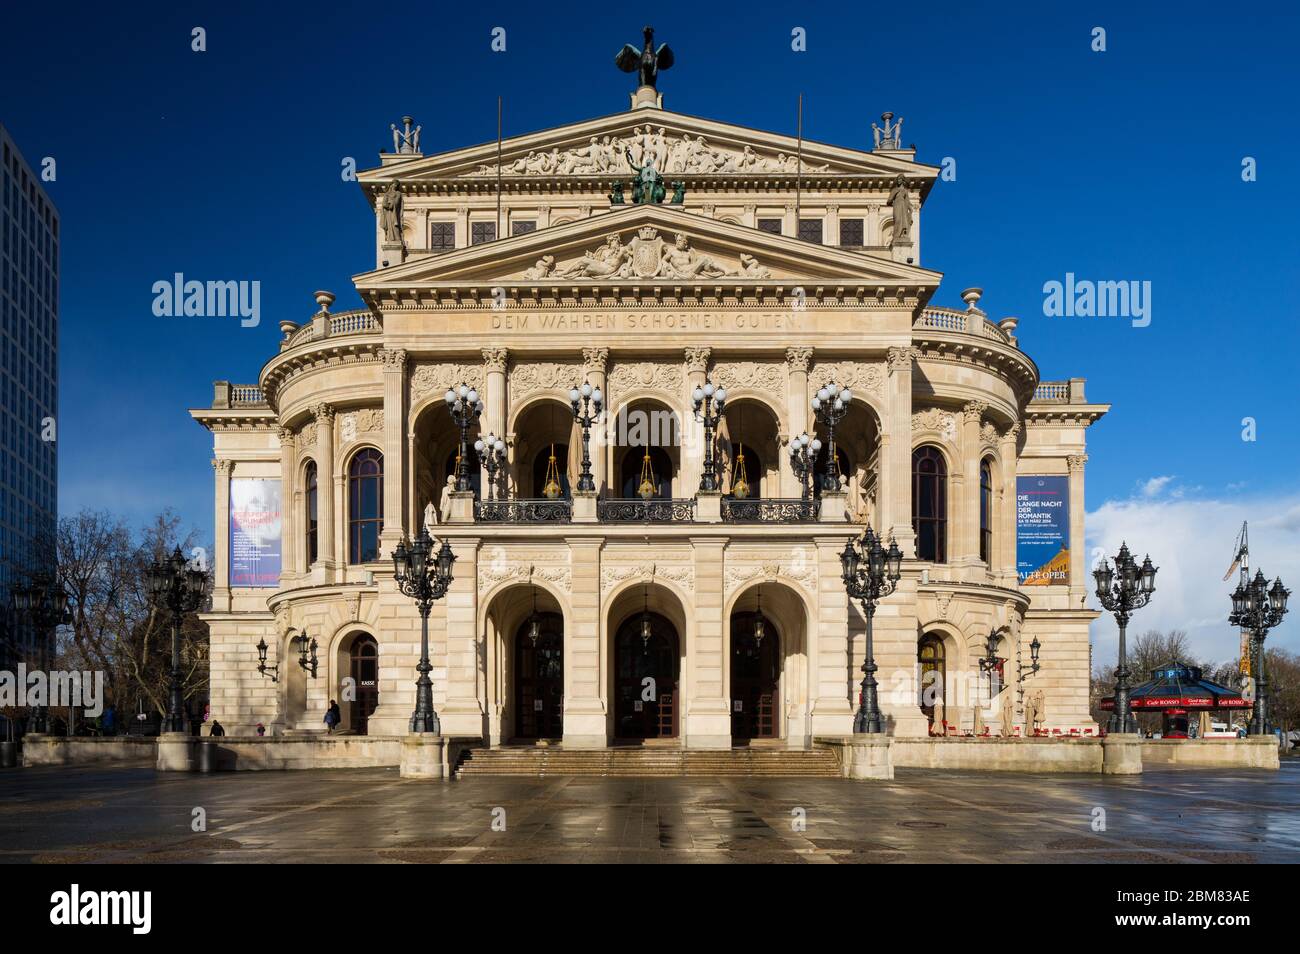 Die Alte Oper, Frankfurt am Main, Hessen, Deutschland. Die Alte Oper ist das ursprüngliche Opernhaus in Frankfurt und ist heute ein Konzertsaal. Stockfoto